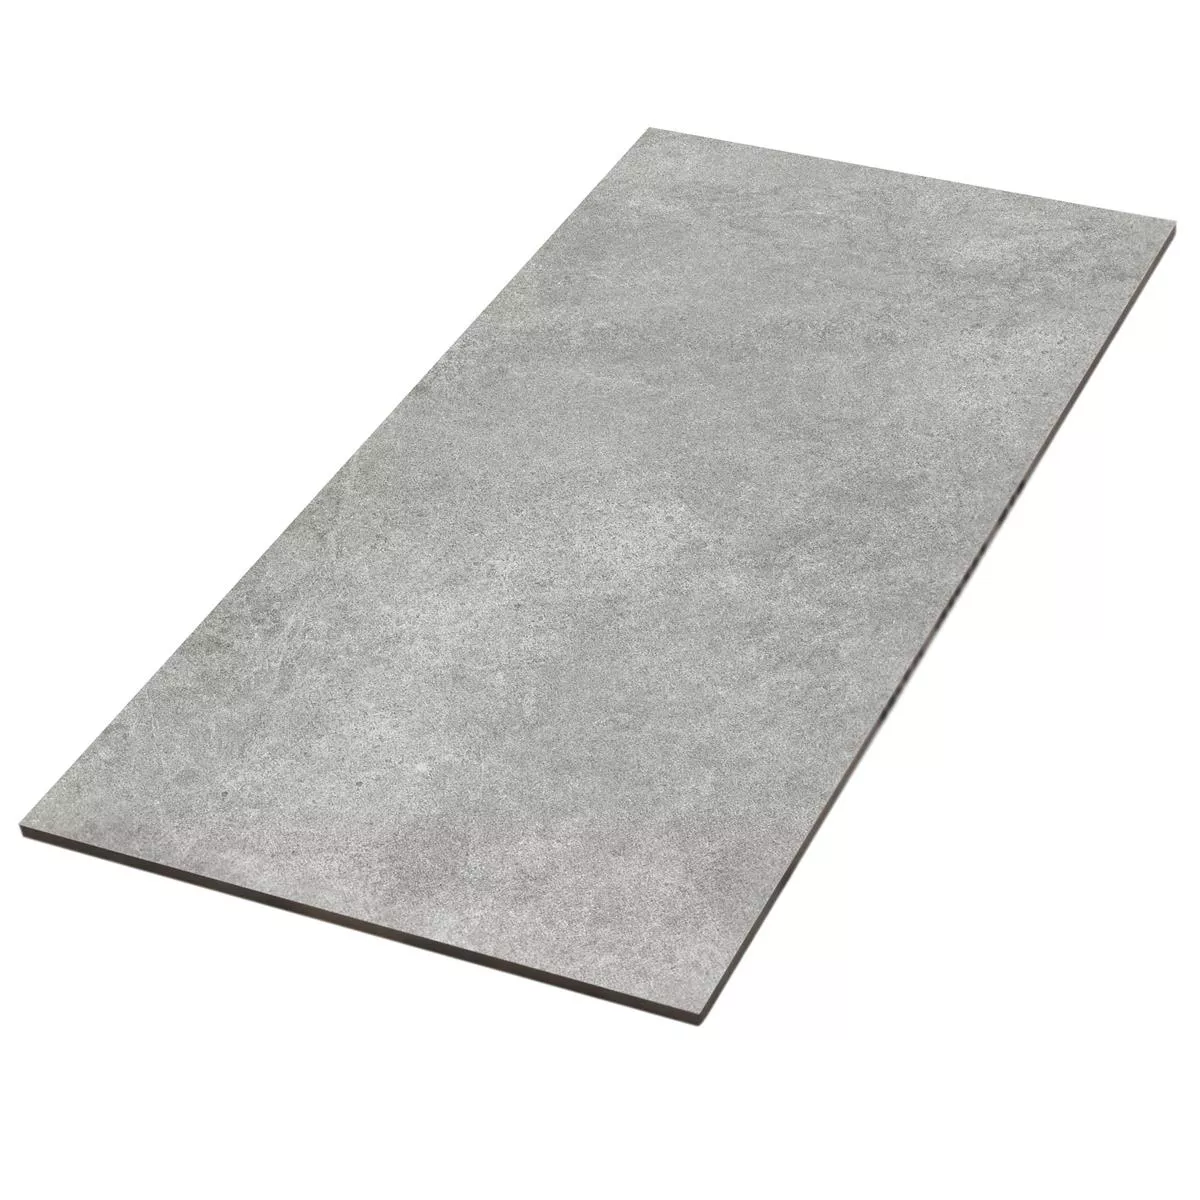 Sample Floor Tiles Montana Unglazed Dark Grey 30x60cm / R10B